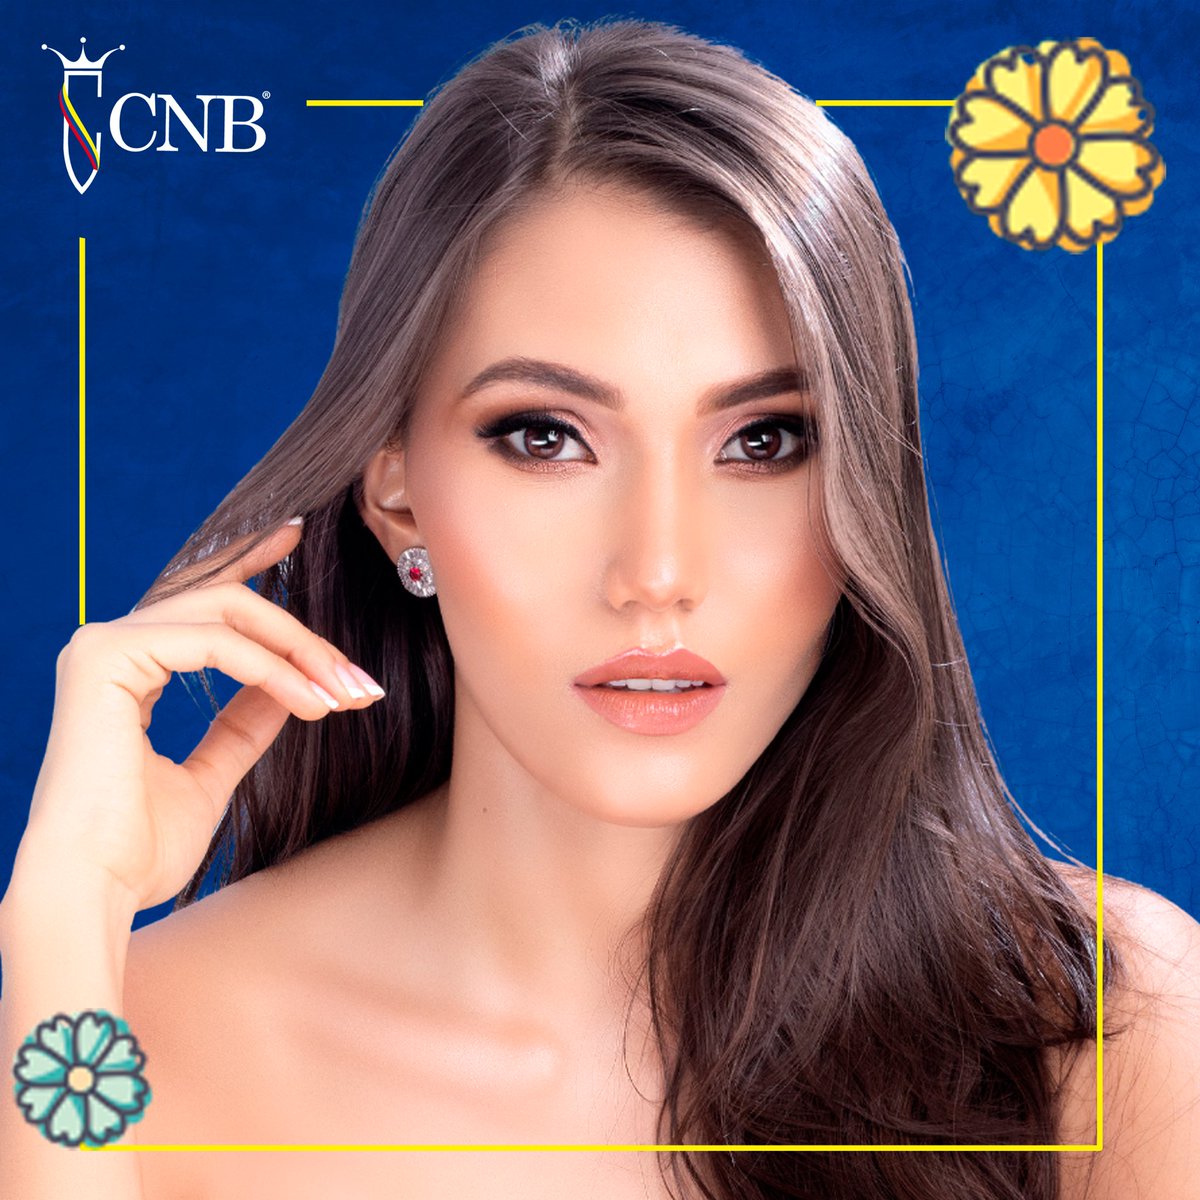 Por designación del Concurso Nacional de Belleza, Karen Ortiz es Colombia en #MissContinentesUnidos ¡La alegría continua! #MásQueBelleza #CNB #ColombiaLoVale